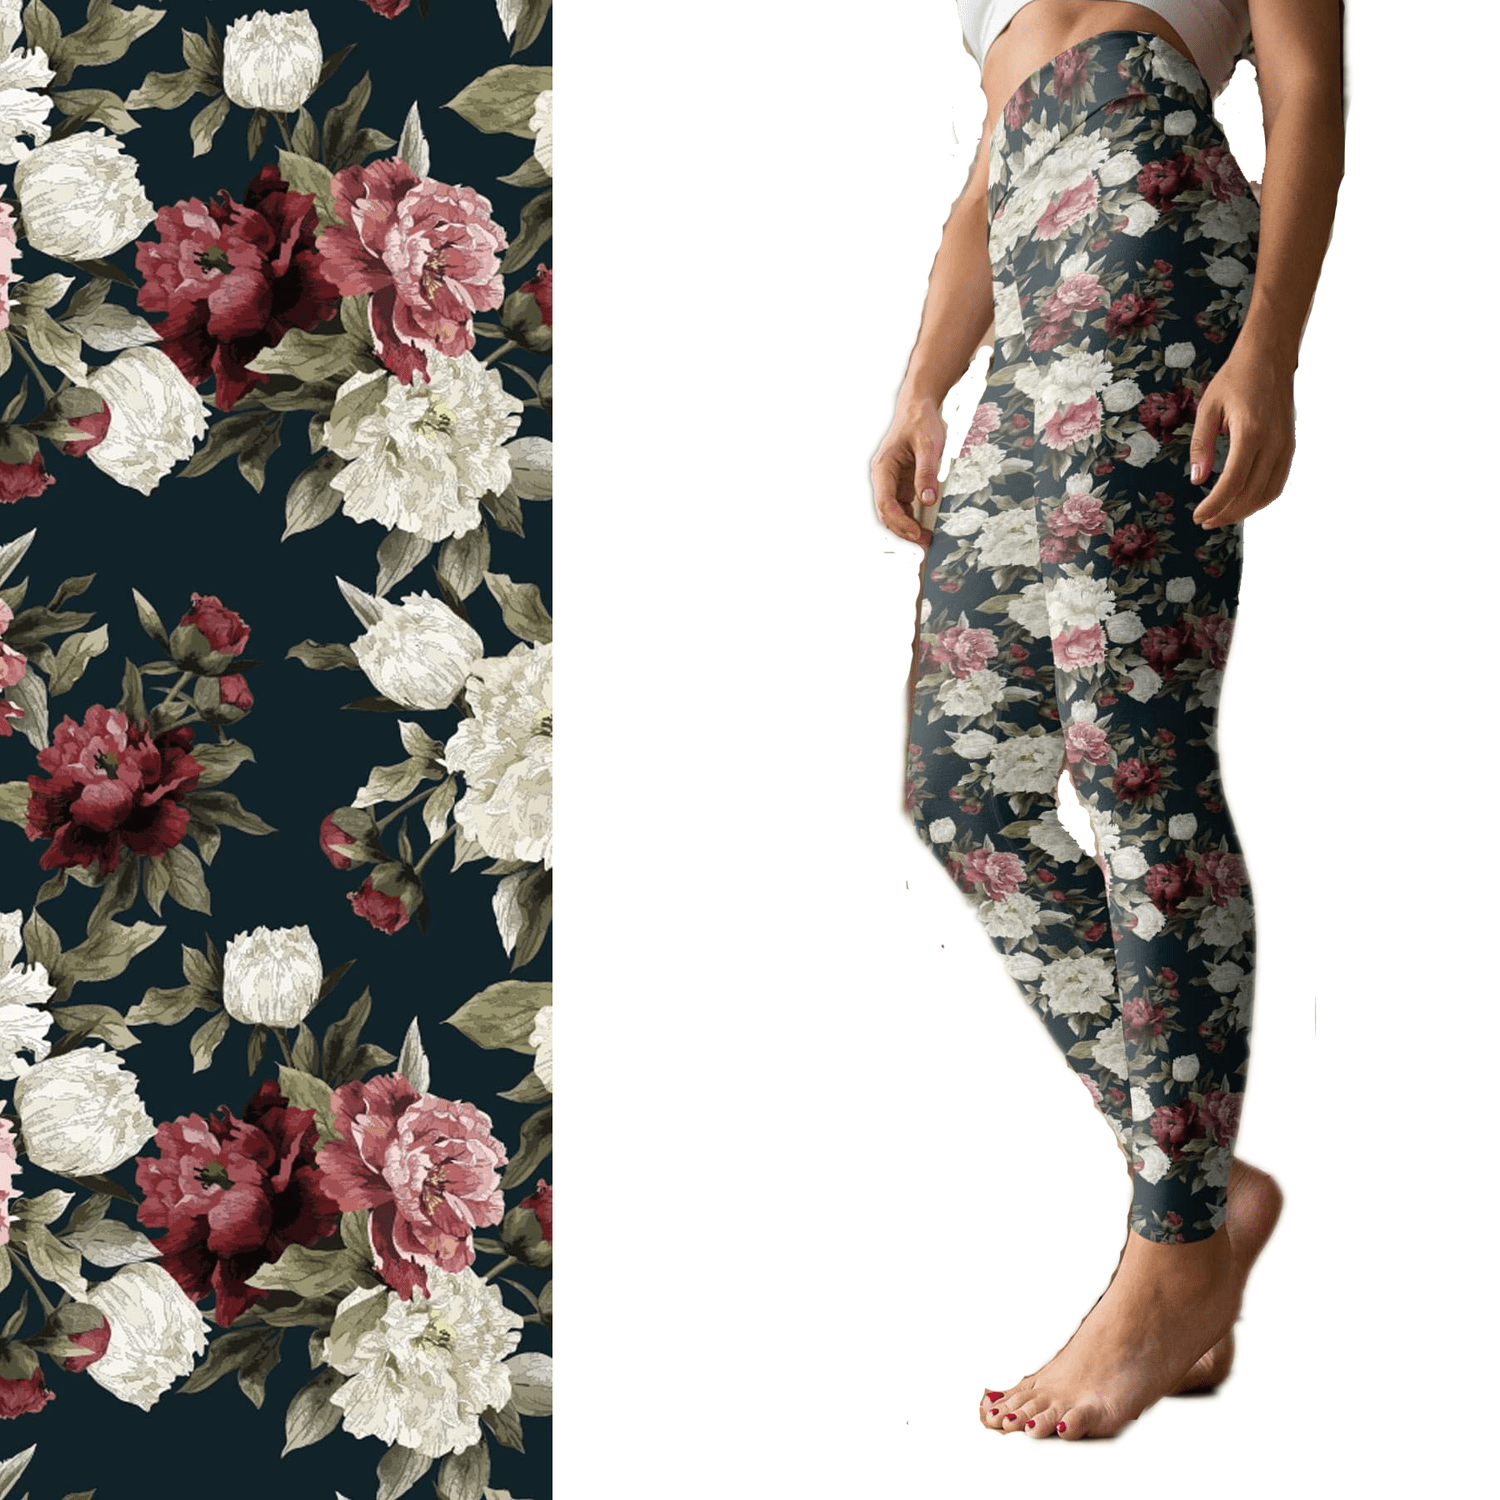 Floral Garden Leggings Roses with Pockets Full Length